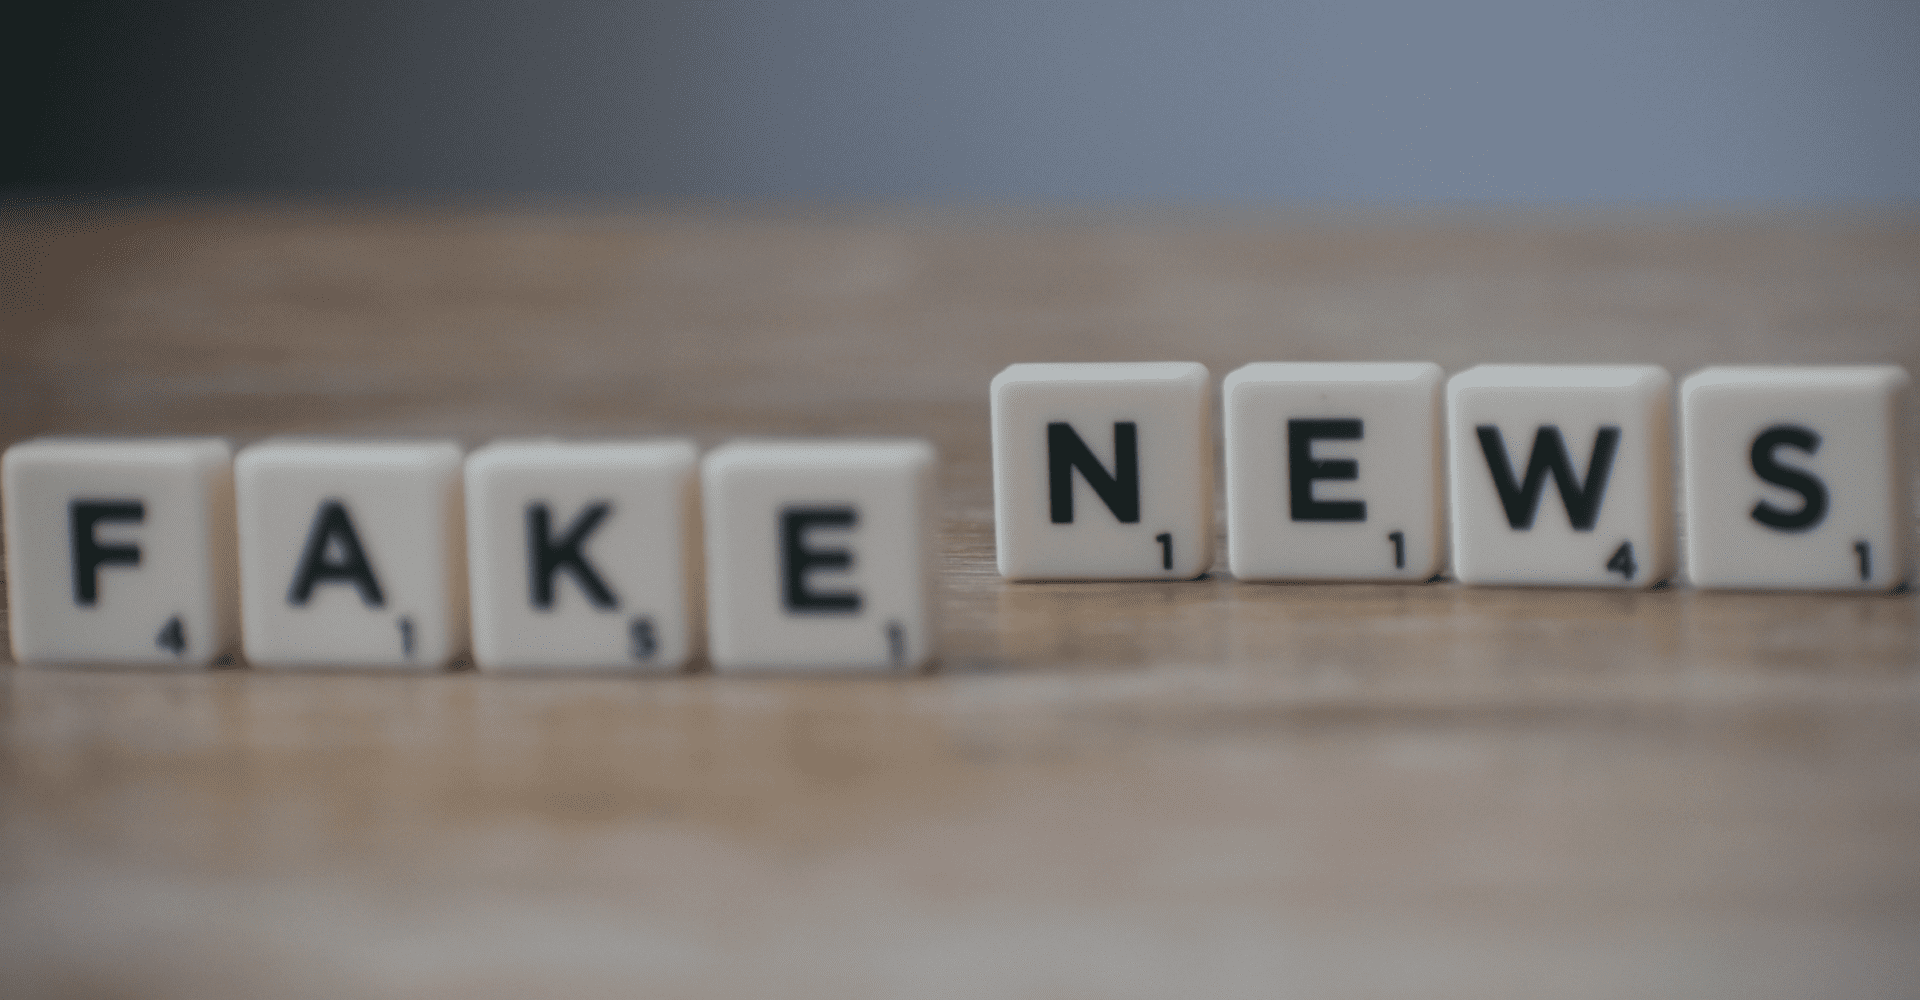 Napis "fake news" ułożony z kafelków Scrabble.